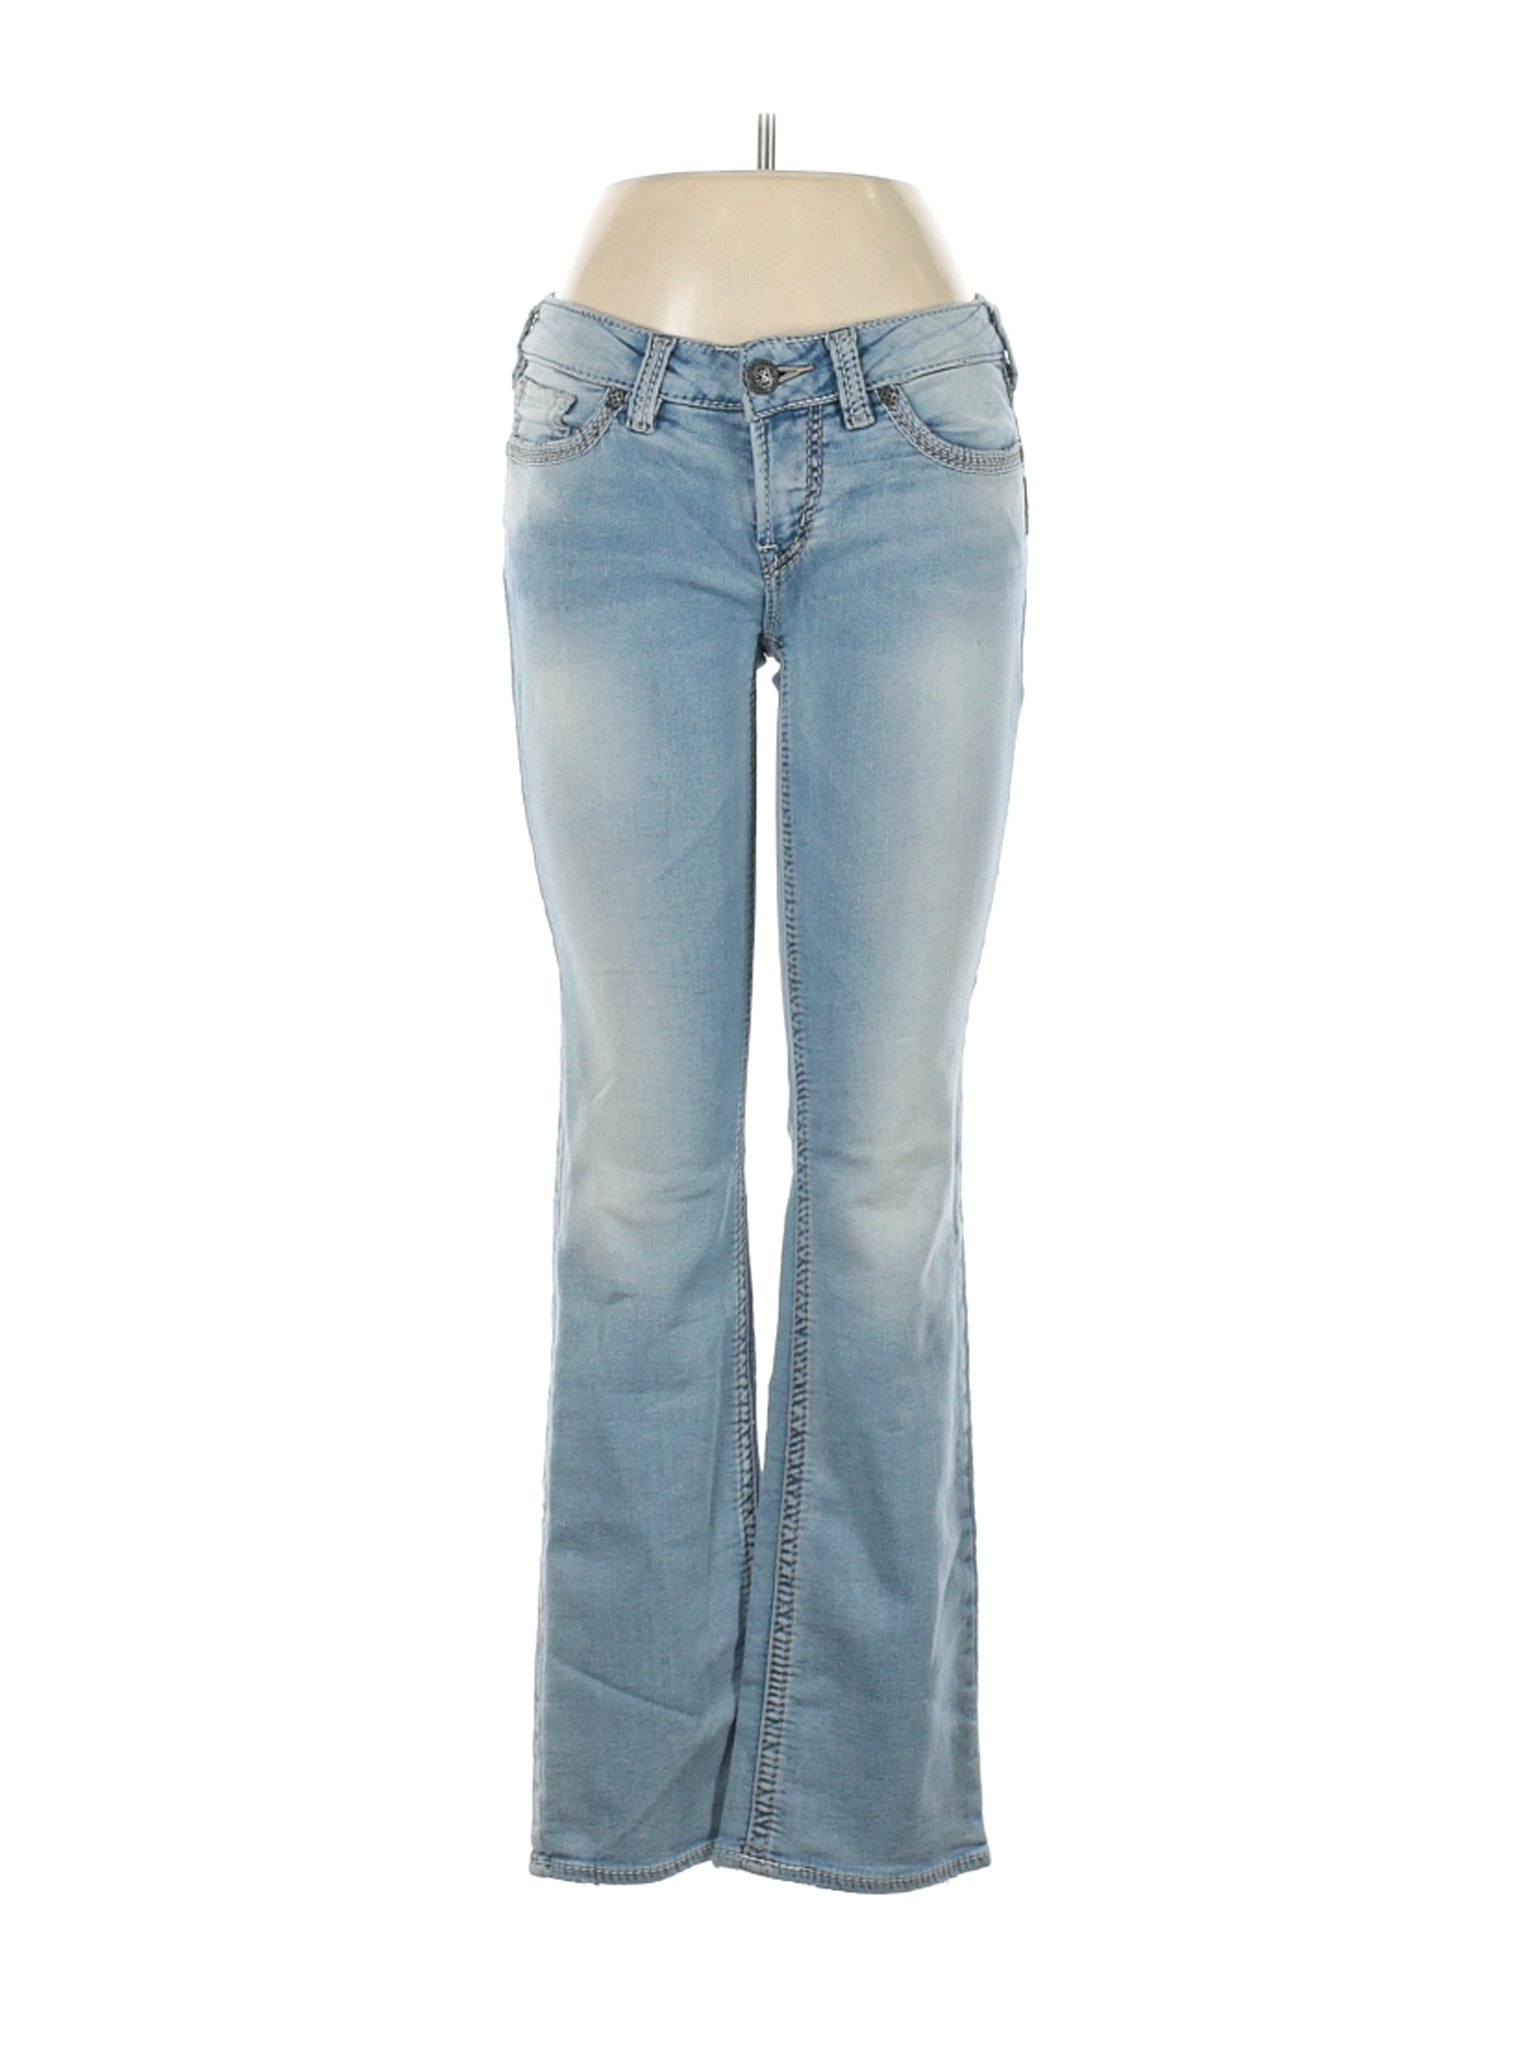 Silver Jeans Co. Women Blue Jeans 28W | eBay